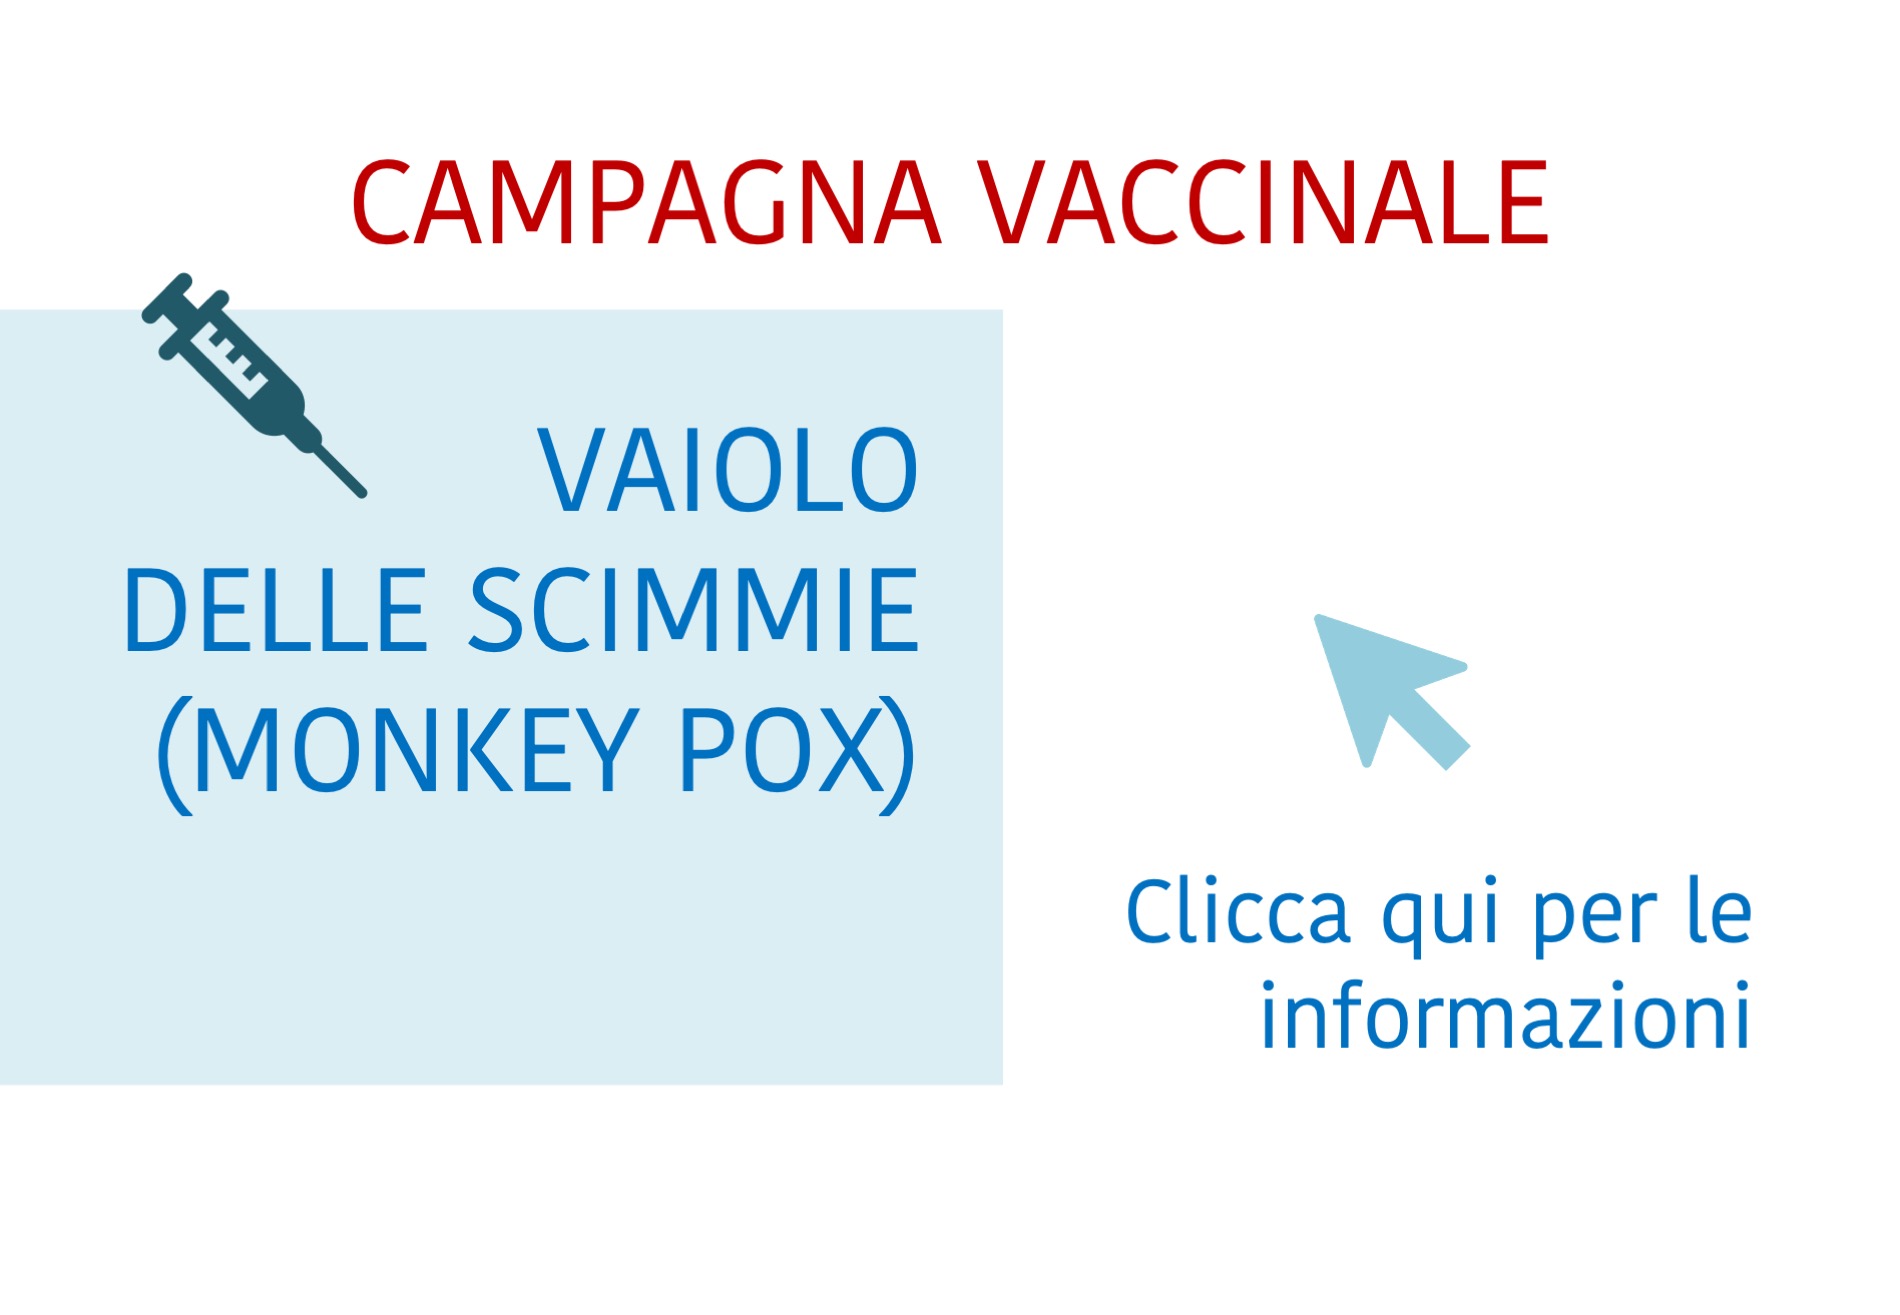 Vaccinazione contro il vaiolo delle scimmie